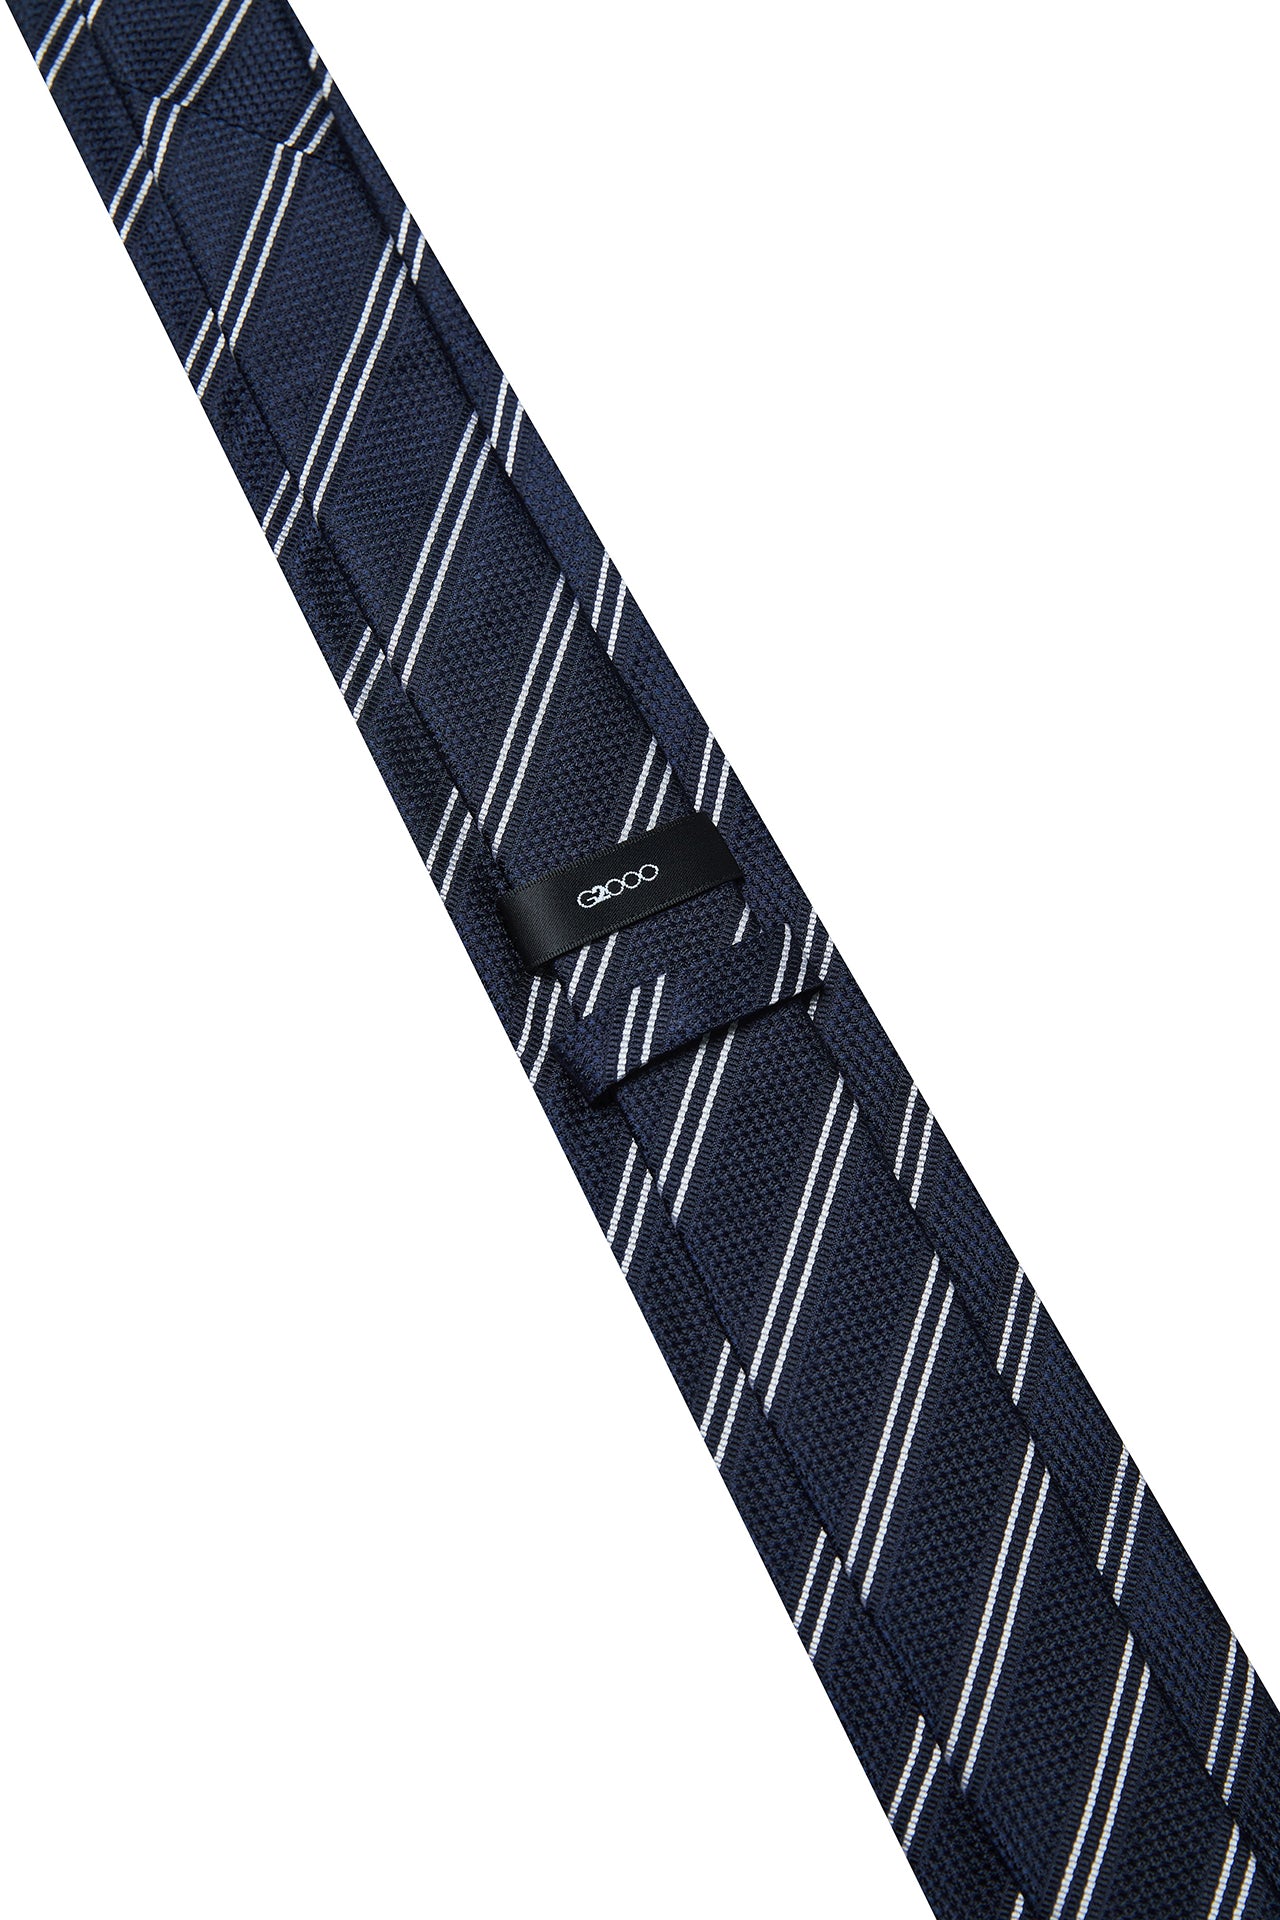 Silk Stripe Tie